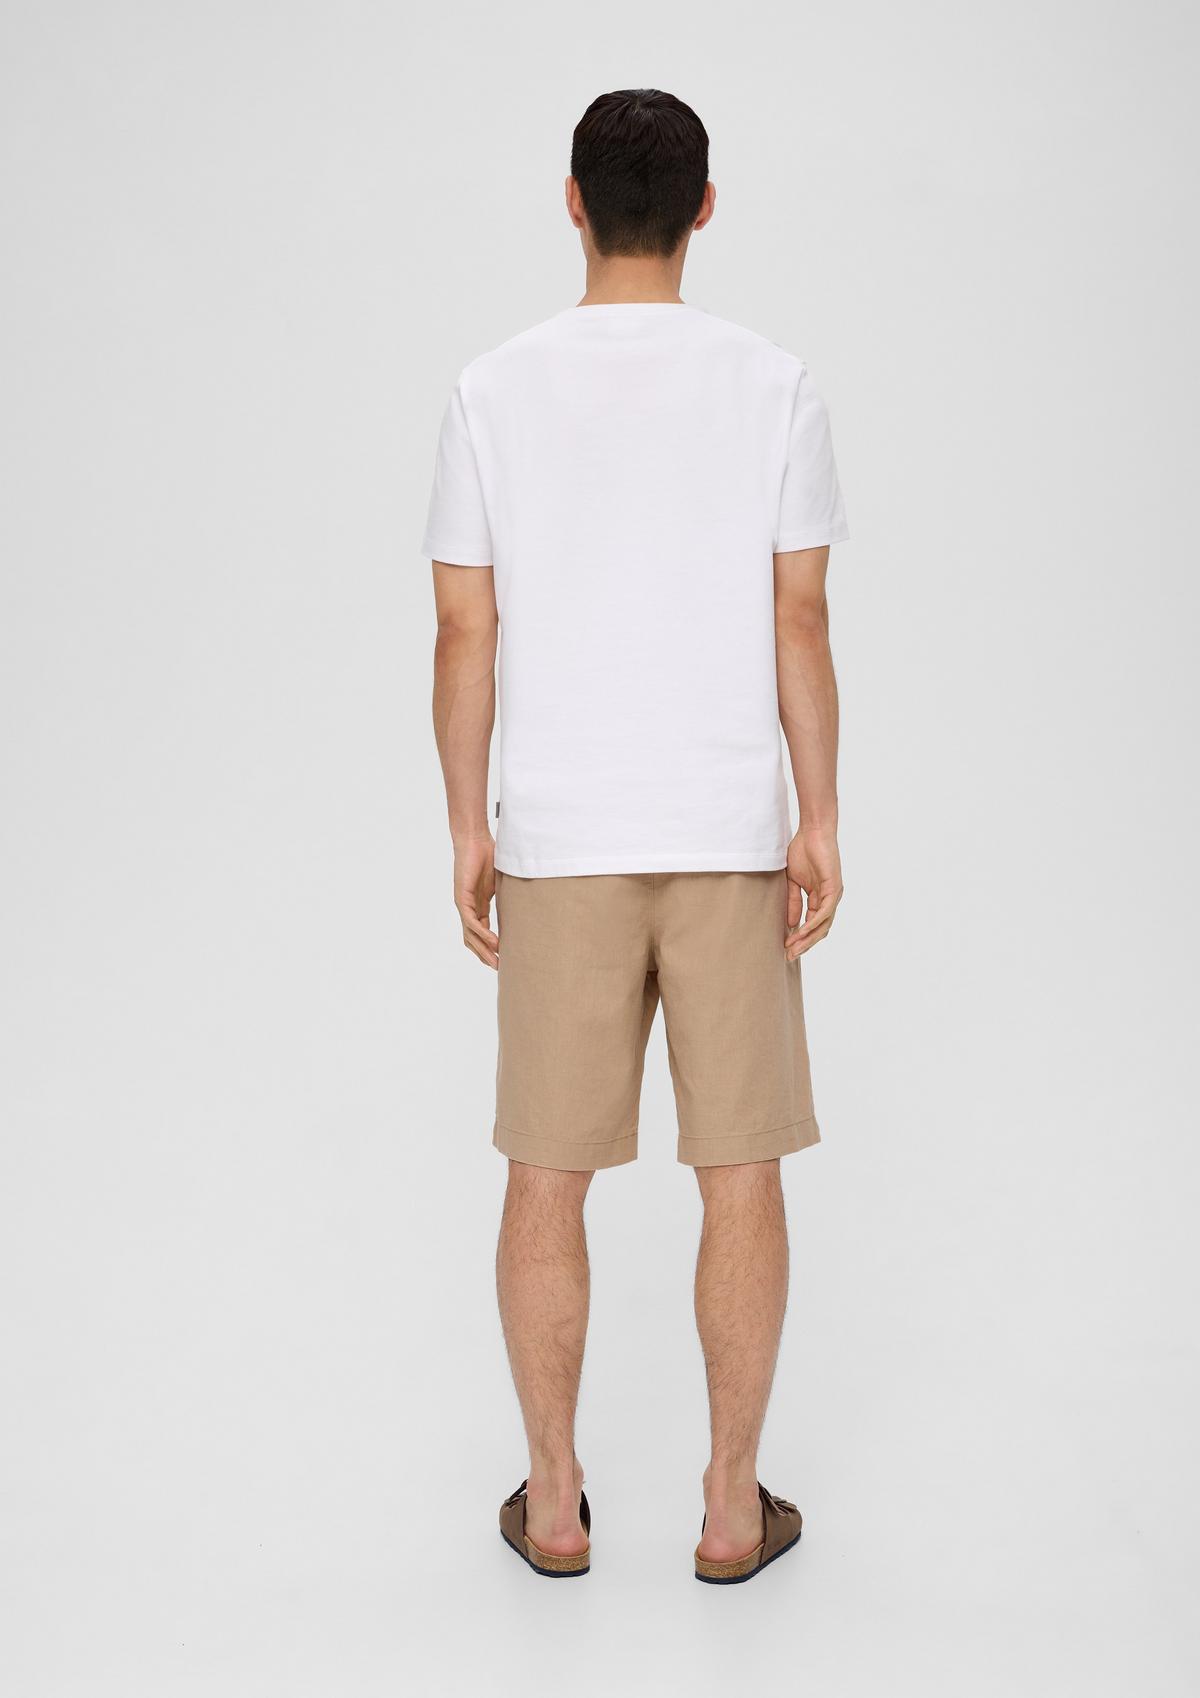 shorts white - linen blended in Bermuda